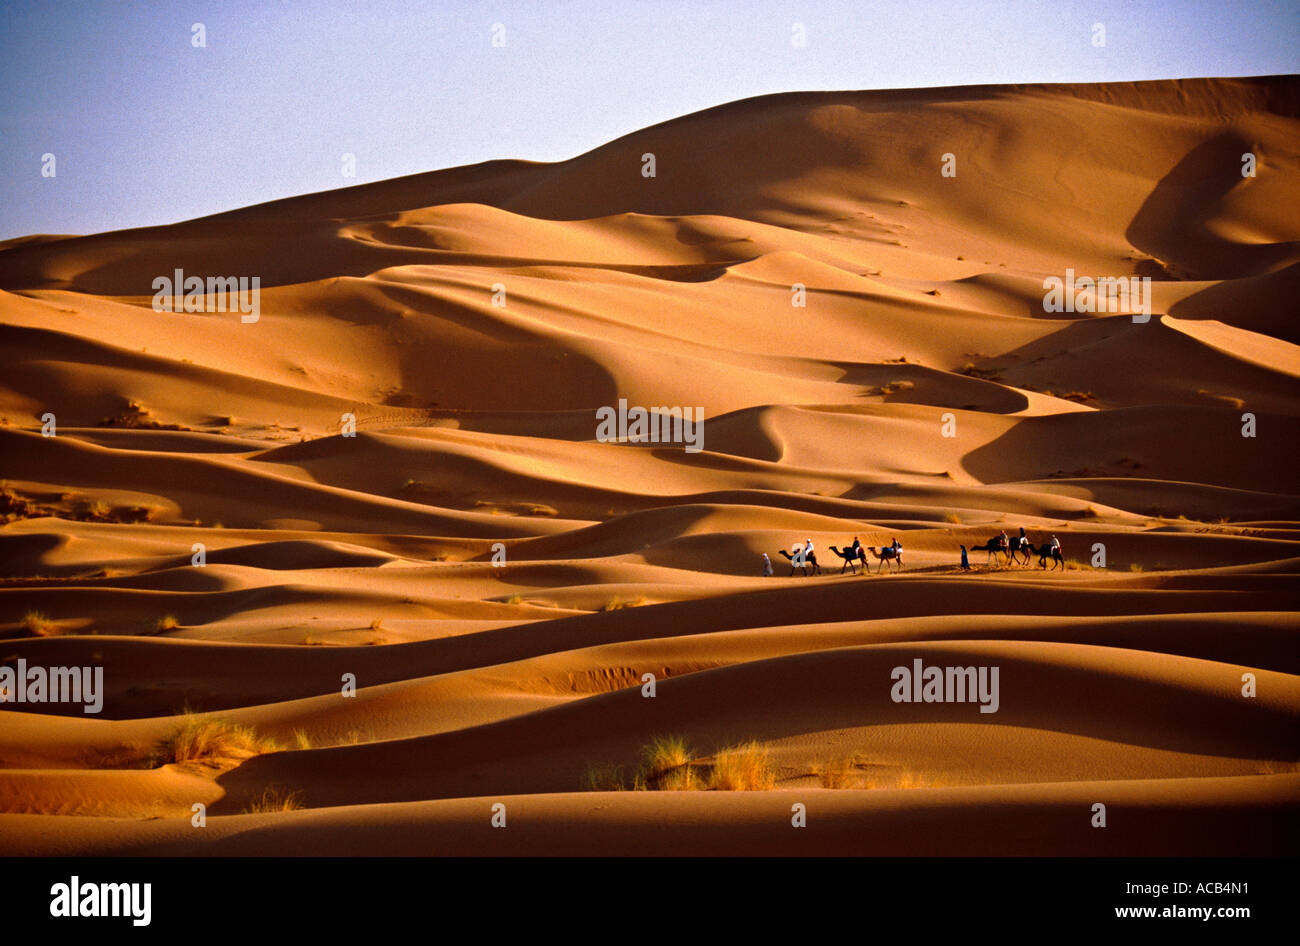 Caravane dromadaire désert du Sahara Maroc Banque D'Images